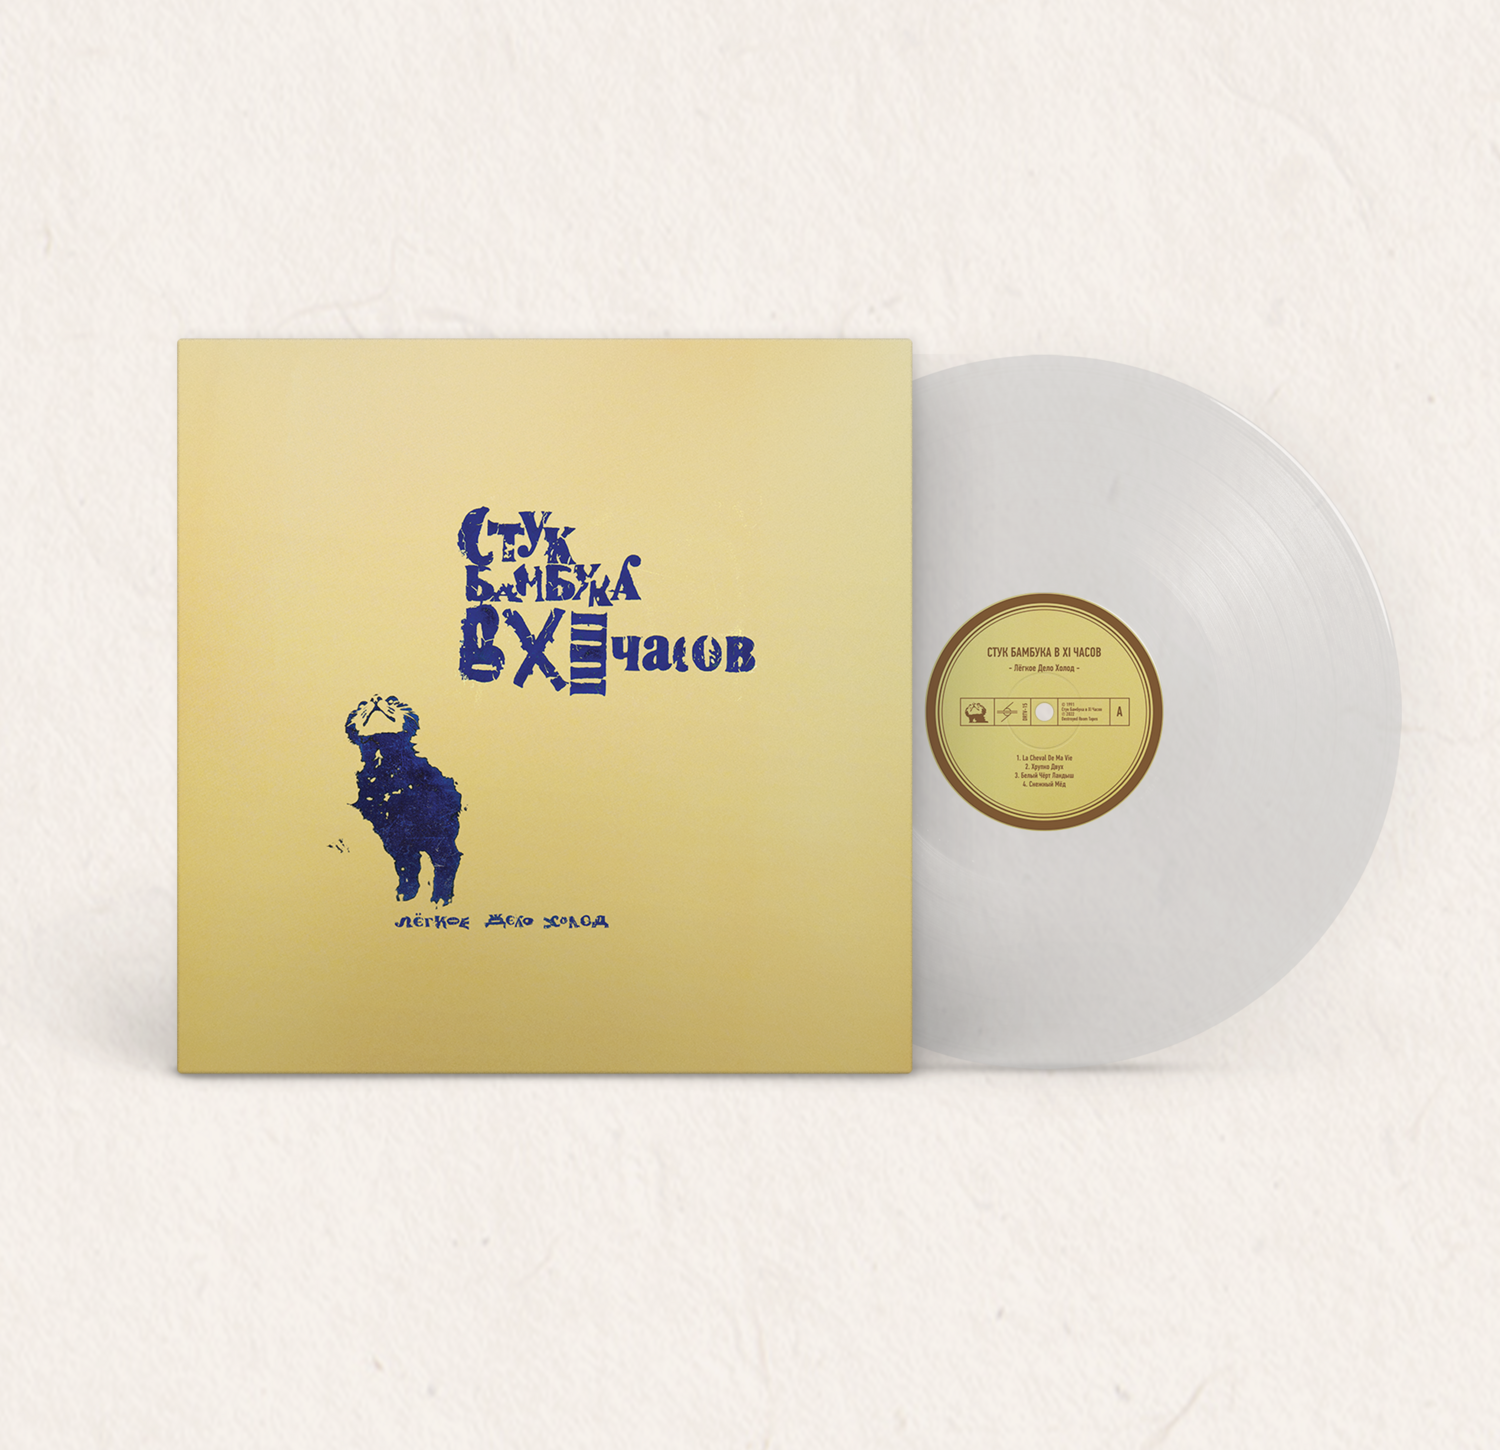 LP: Стук бамбука в XI часов — Лёгкое дело холод (Clear Vinyl)